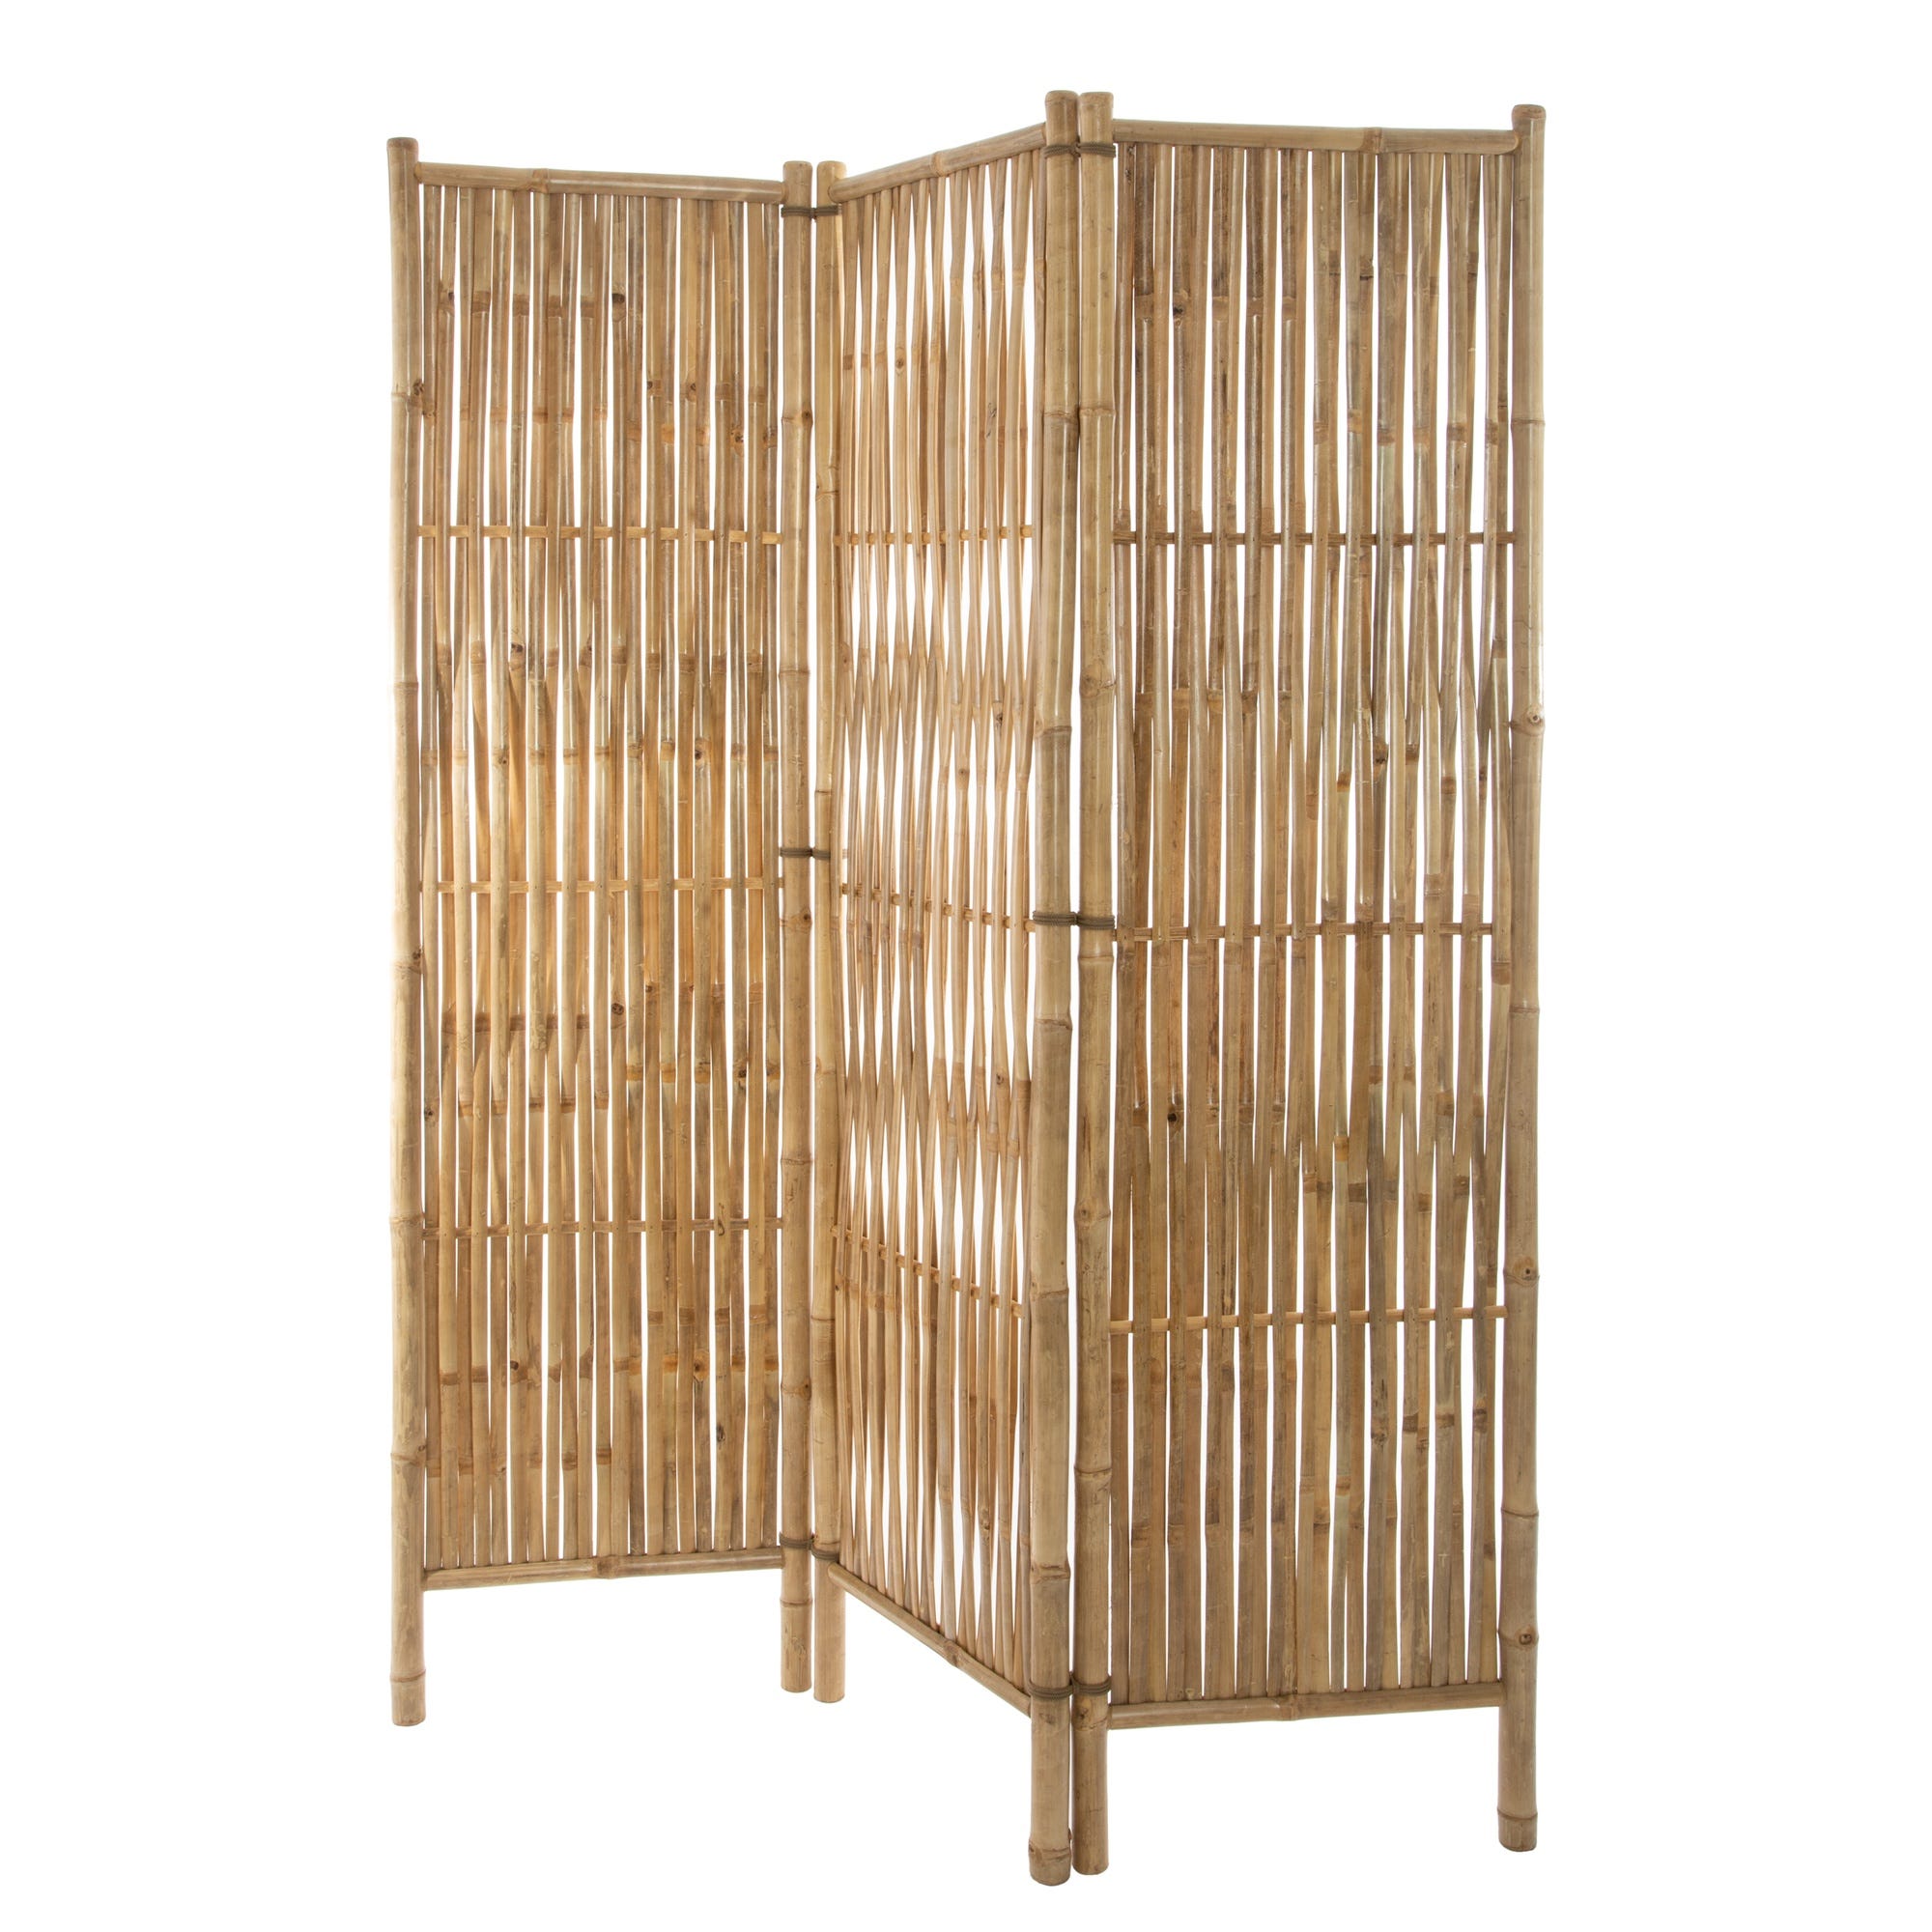 Biombo divisor de bambú Vida XL 247197 - Comprar online a precio barato